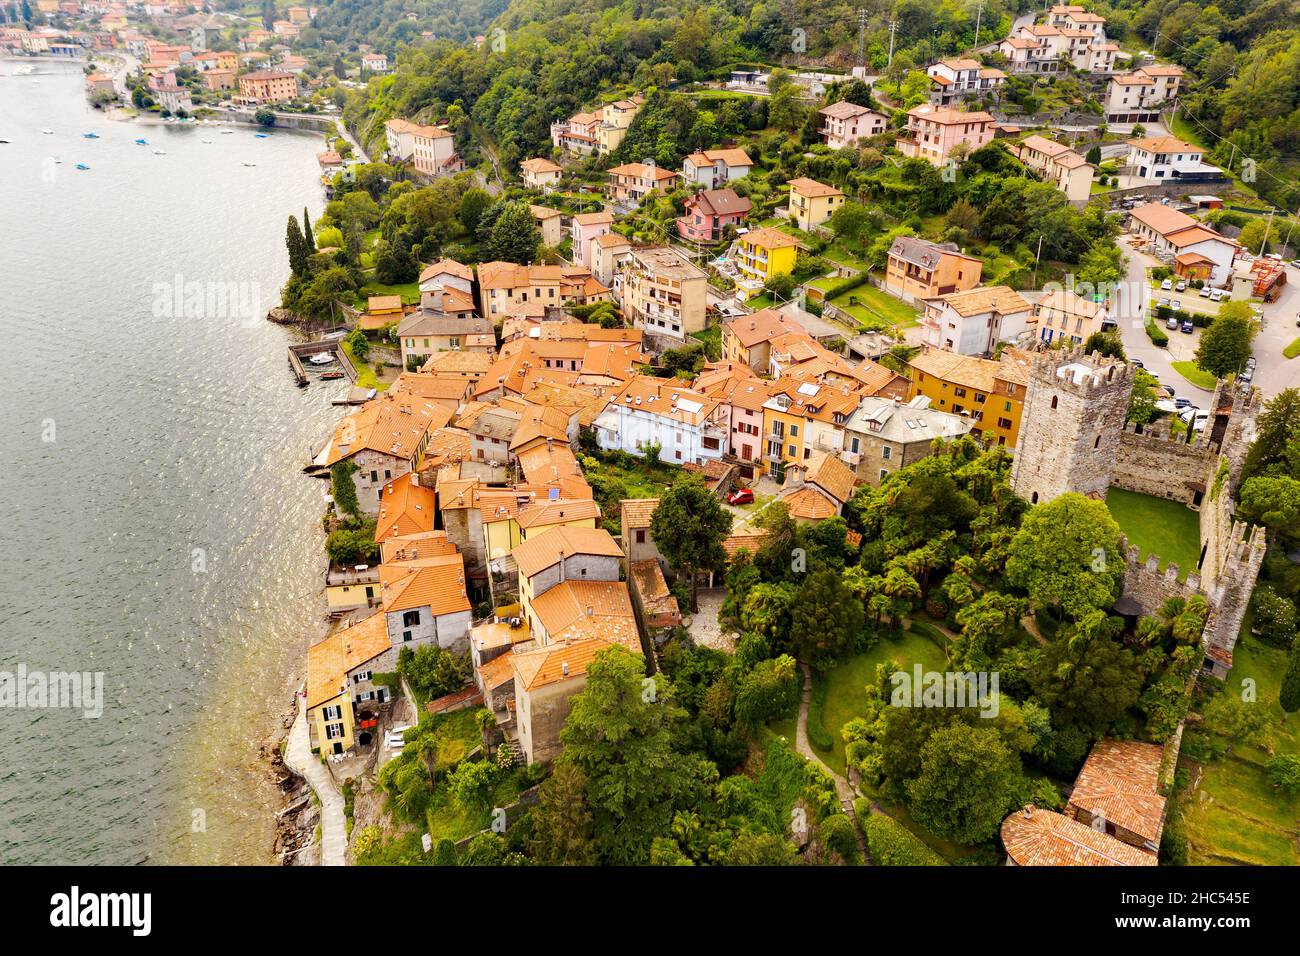 Lake Como (IT), Santa Maria Rezzonico, aerial view Stock Photo